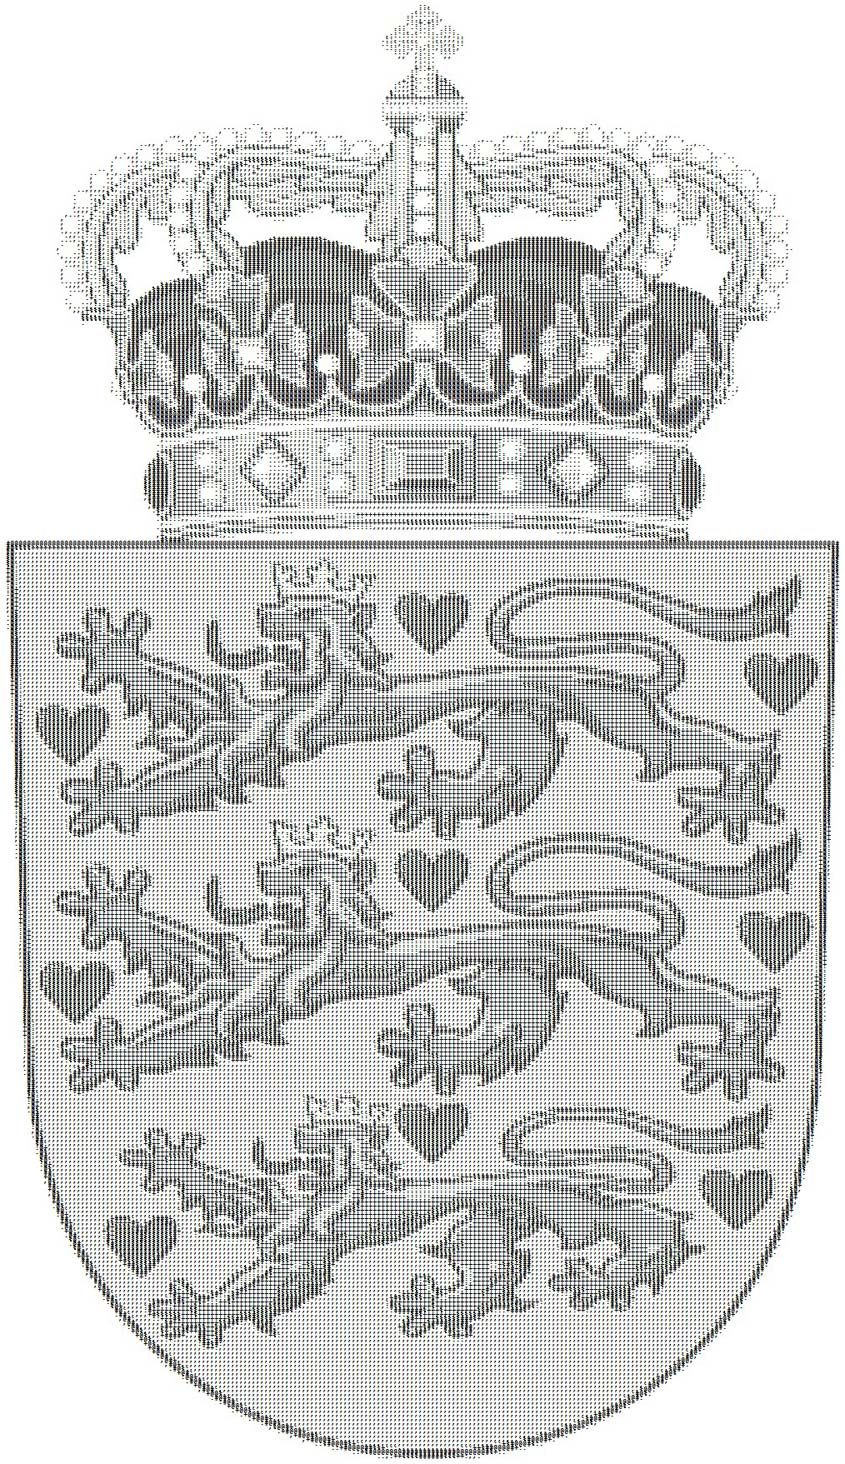 Das Wappen Dänemarks als ASCII-Bild